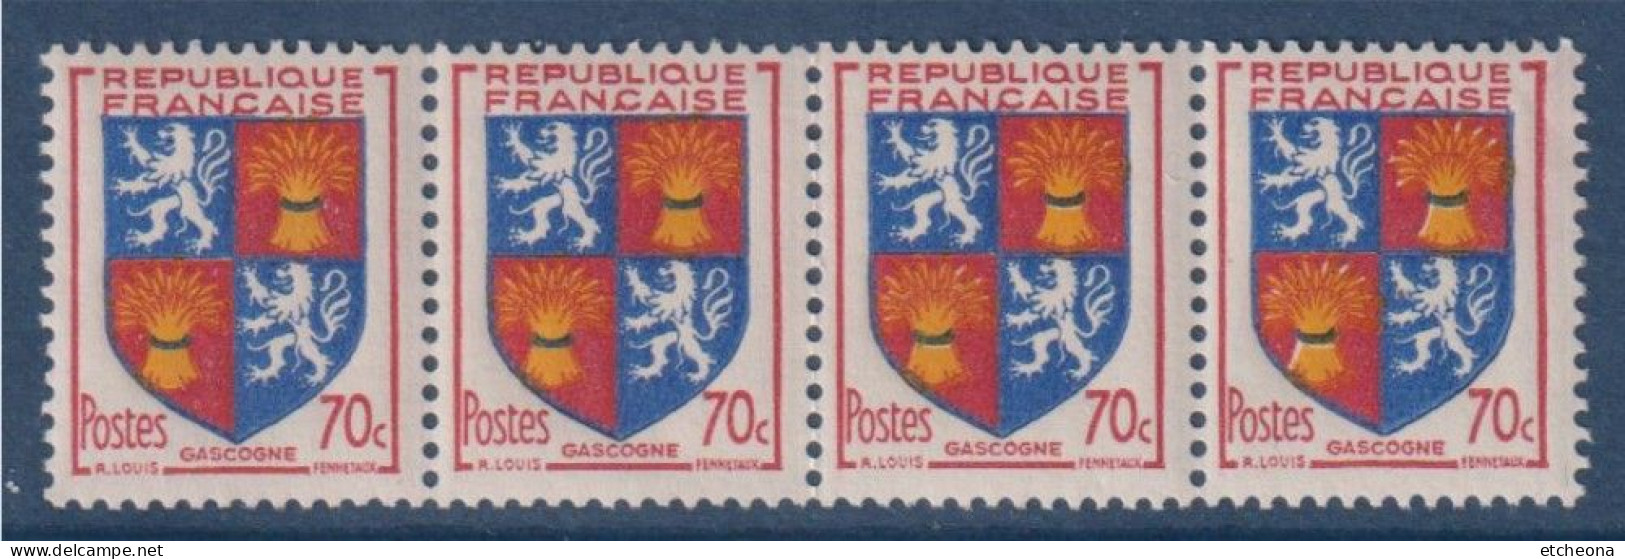 Gascogne Armoiries De Provinces VI N°958 Bande De 4 Timbres Neufs - 1941-66 Armoiries Et Blasons